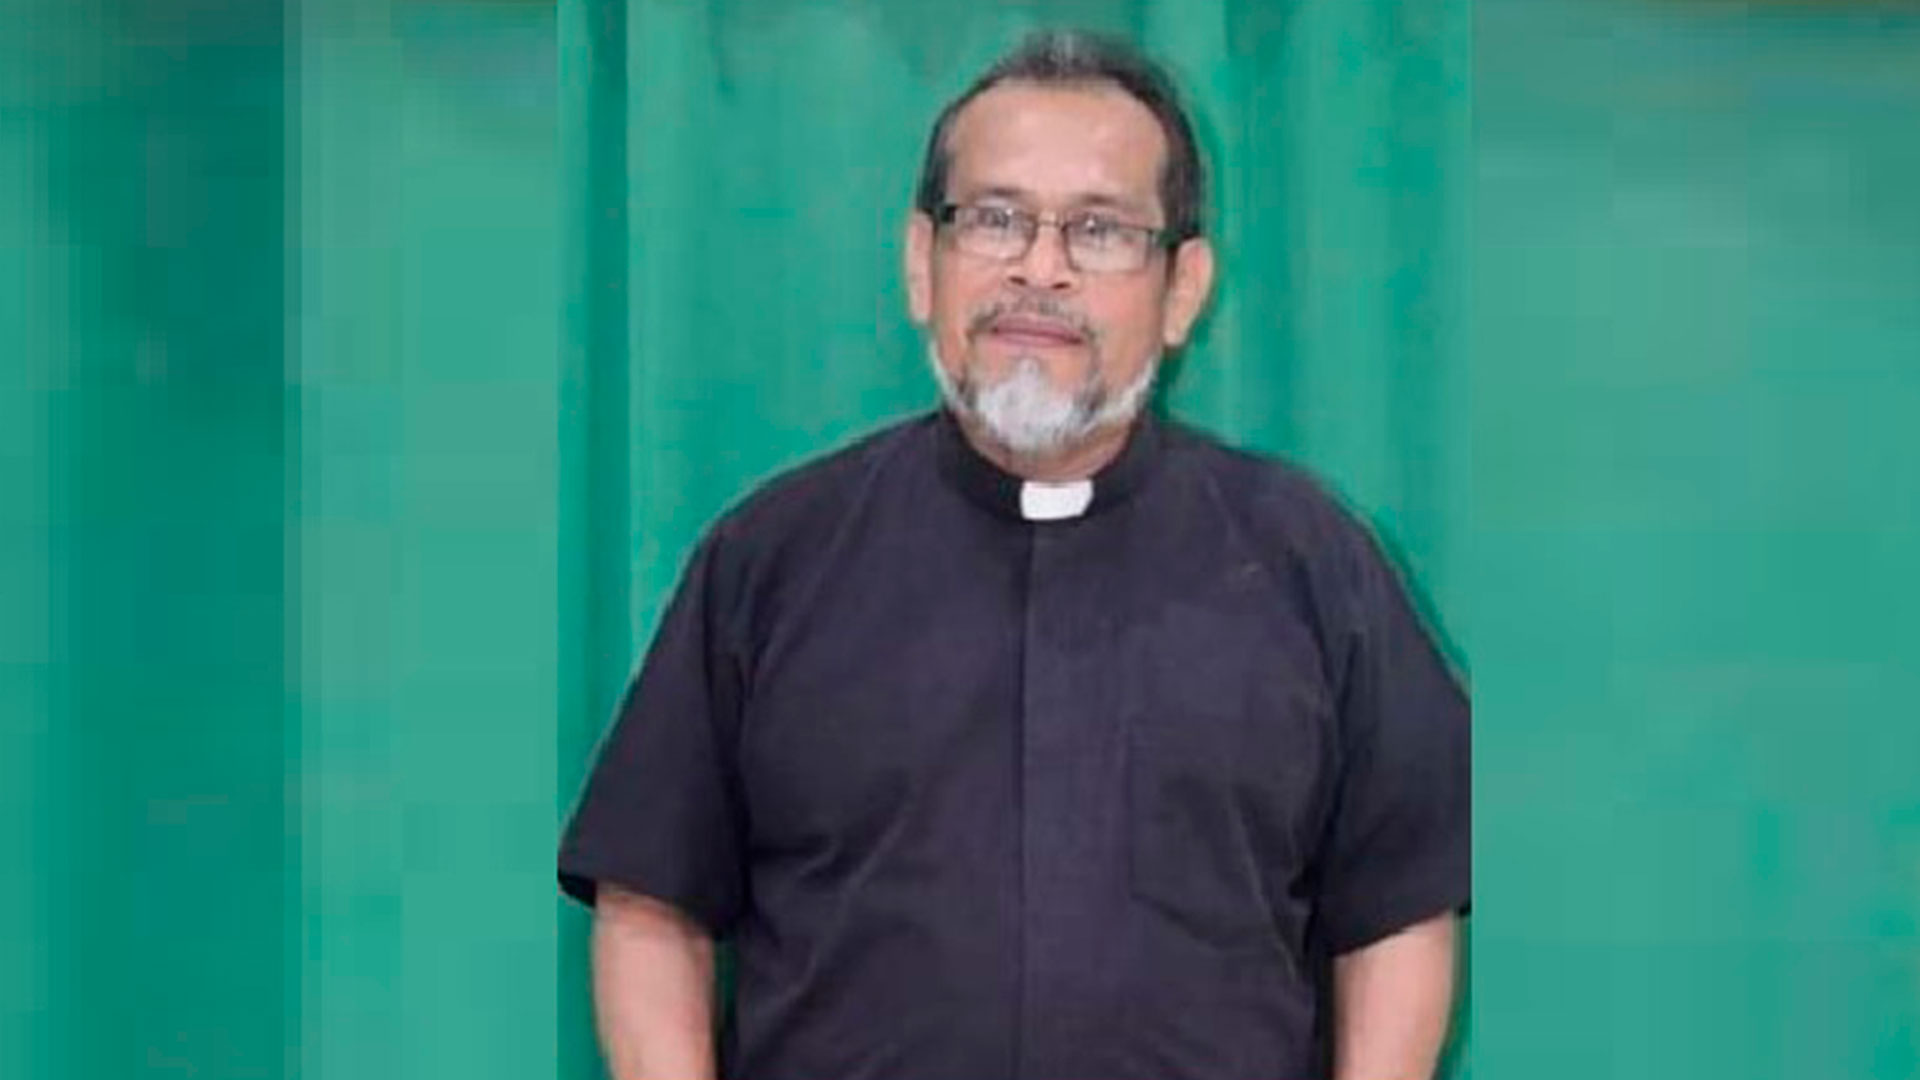 El párroco de la iglesia de Nandaime, Manuel García es el primer sacerdote católico que el régimen de Daniel Ortega encarcela.